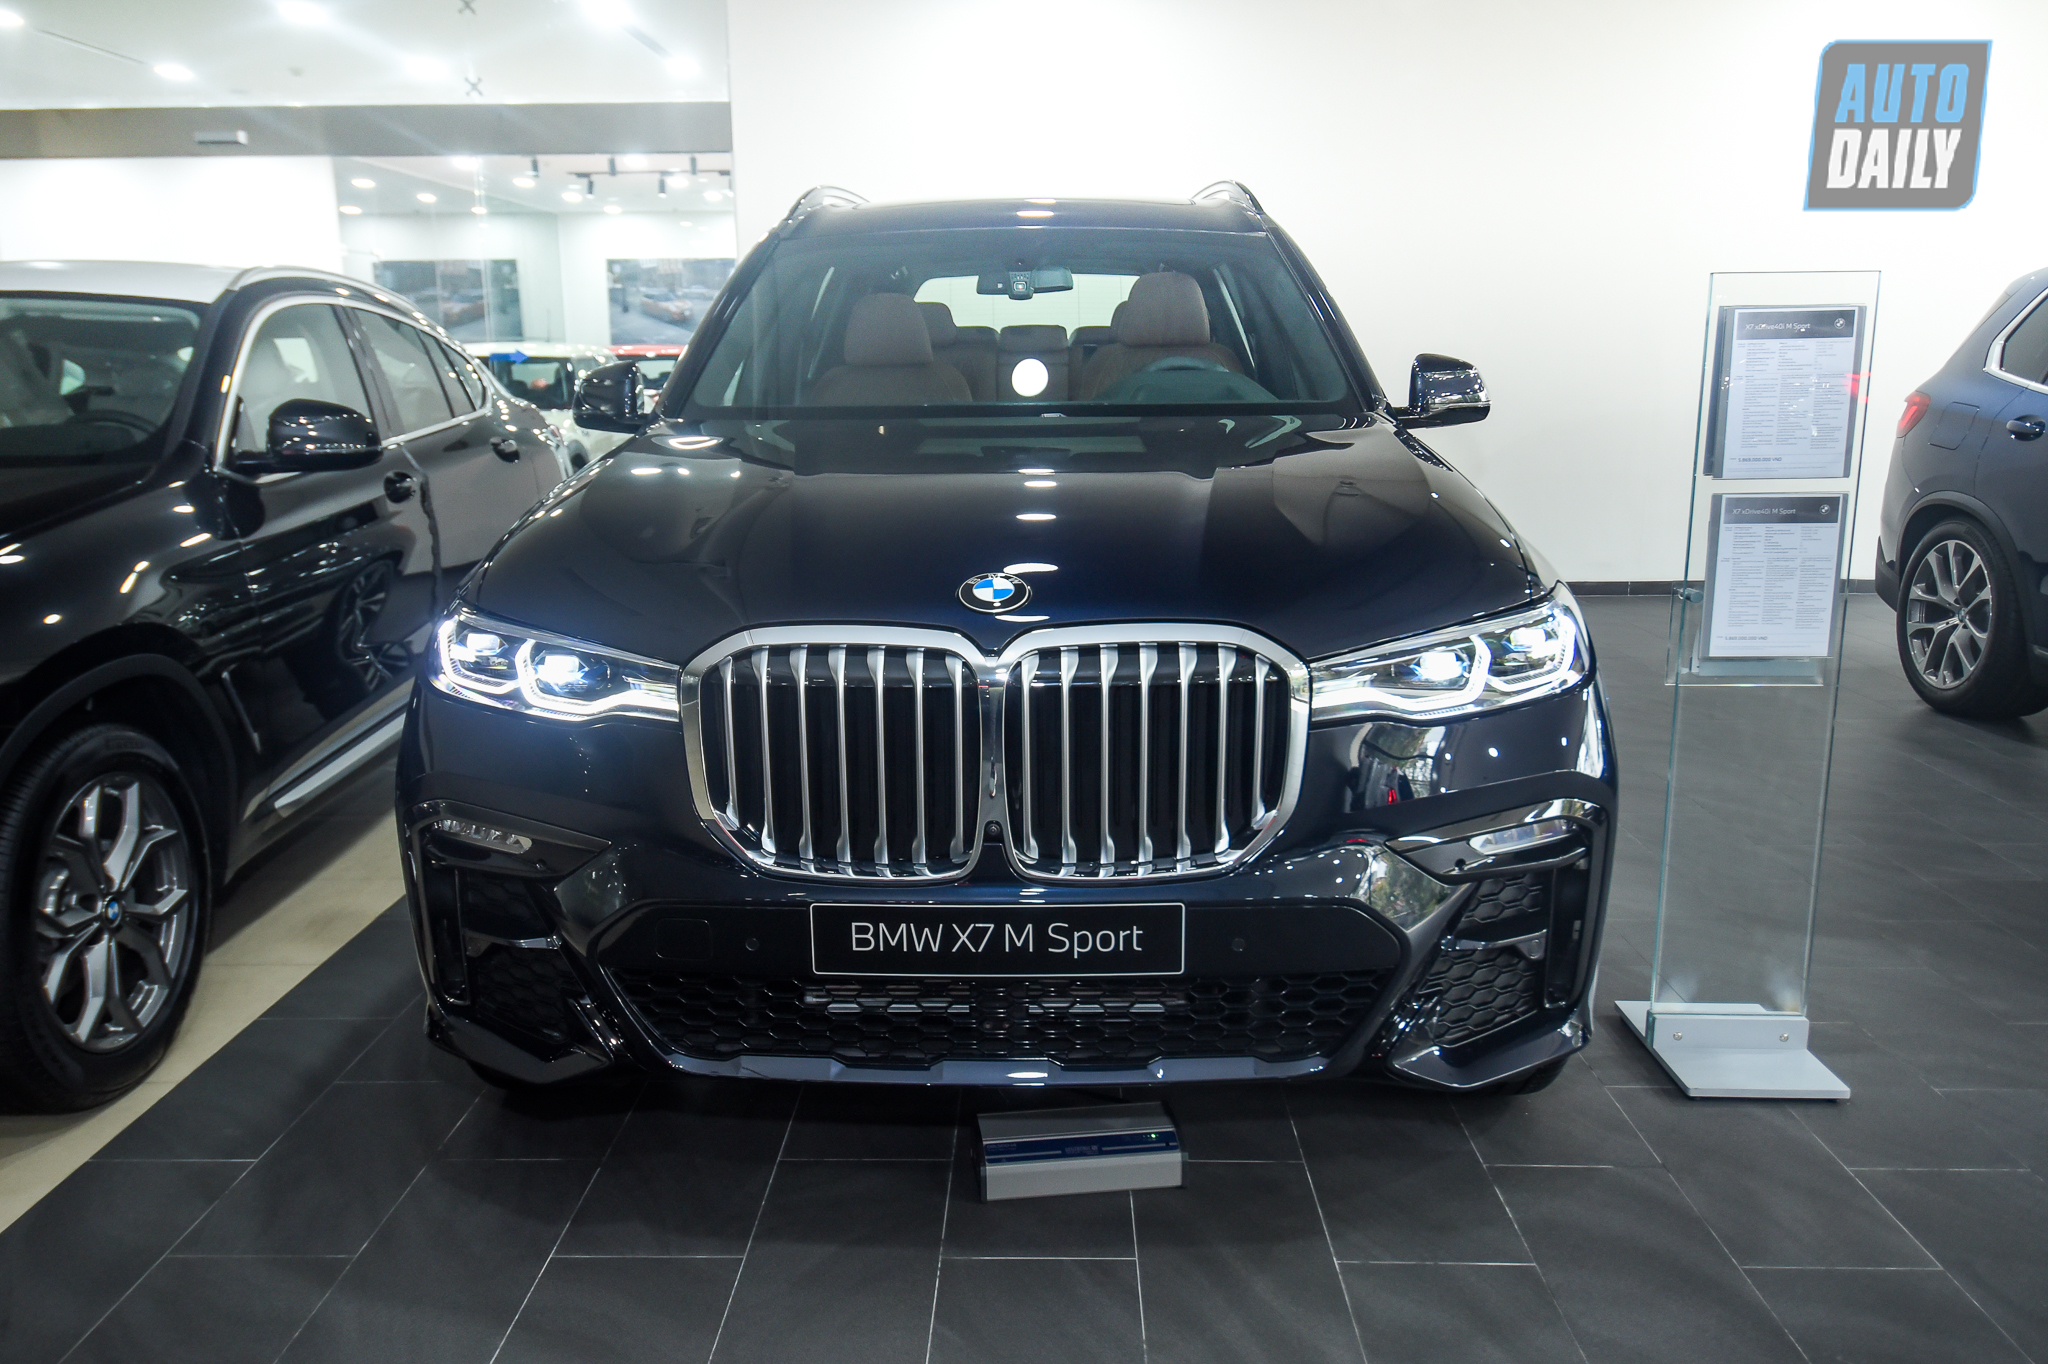 Diện kiến BMW X7 M-Sport 2021 chính hãng giá hơn 5,8 tỷ đồng dsc-6805.jpg